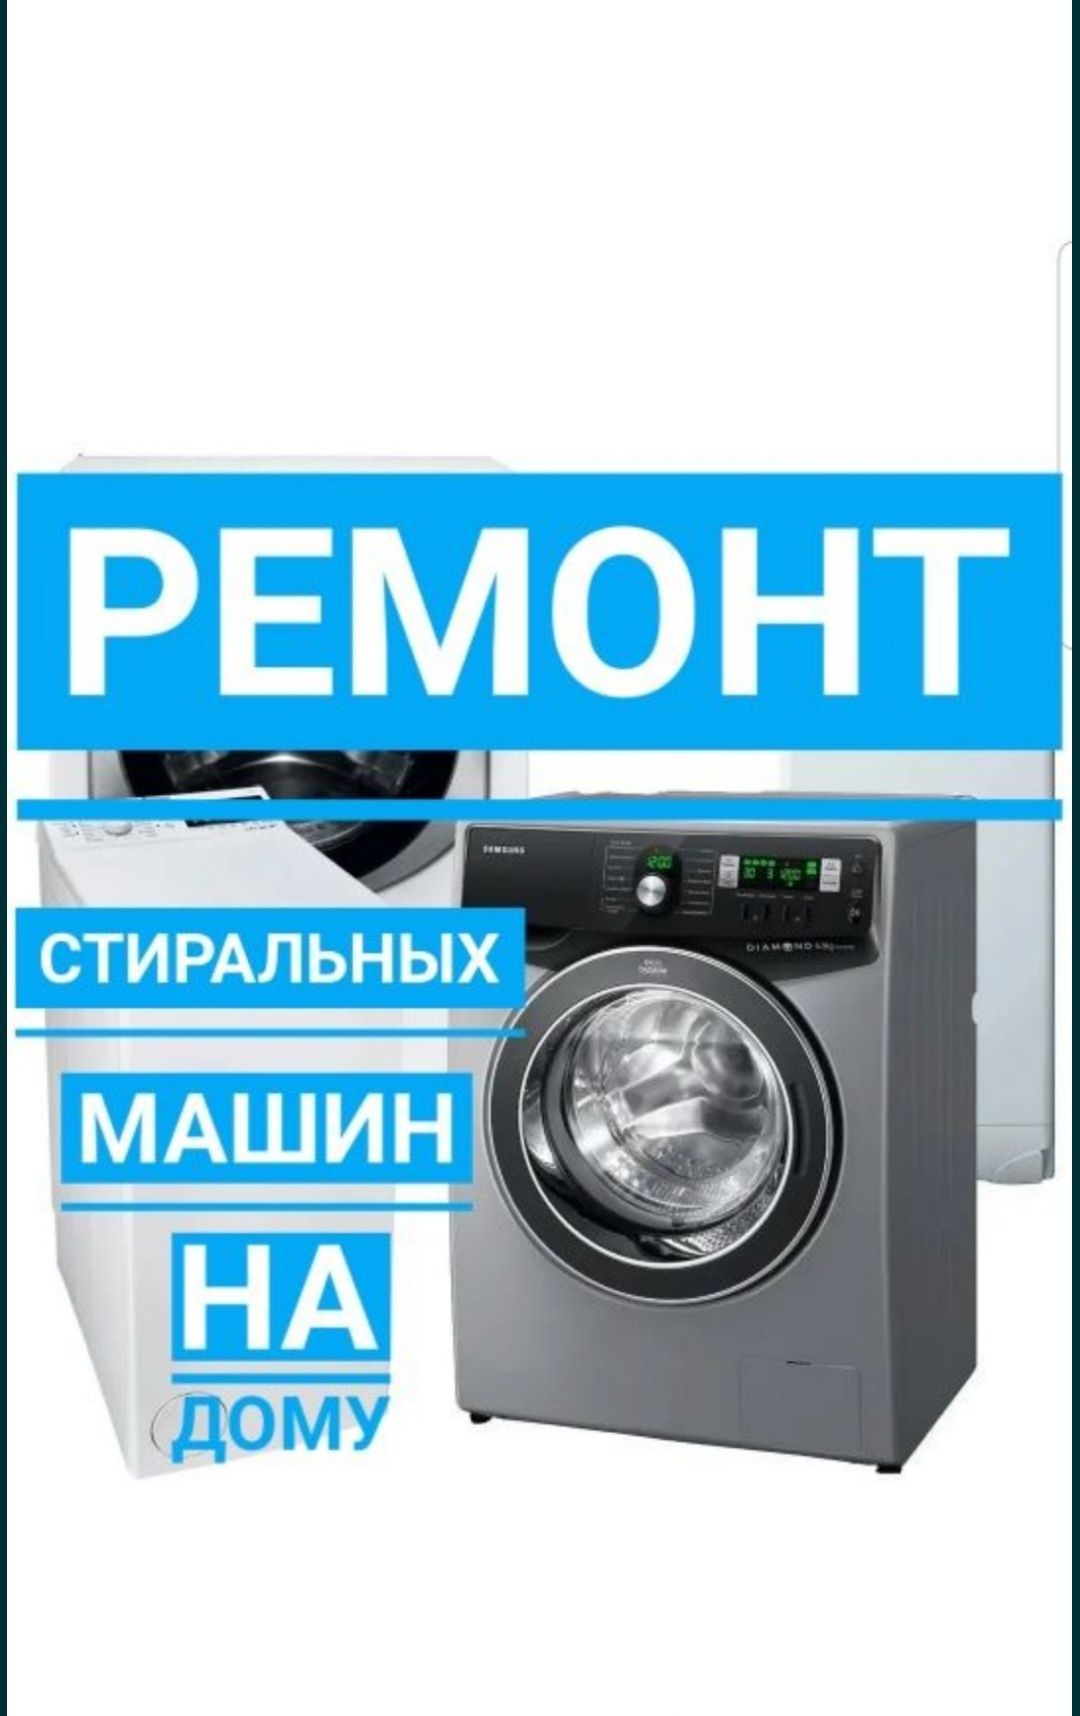 Ремонт стиральных машин, автомат. г. Караганда.